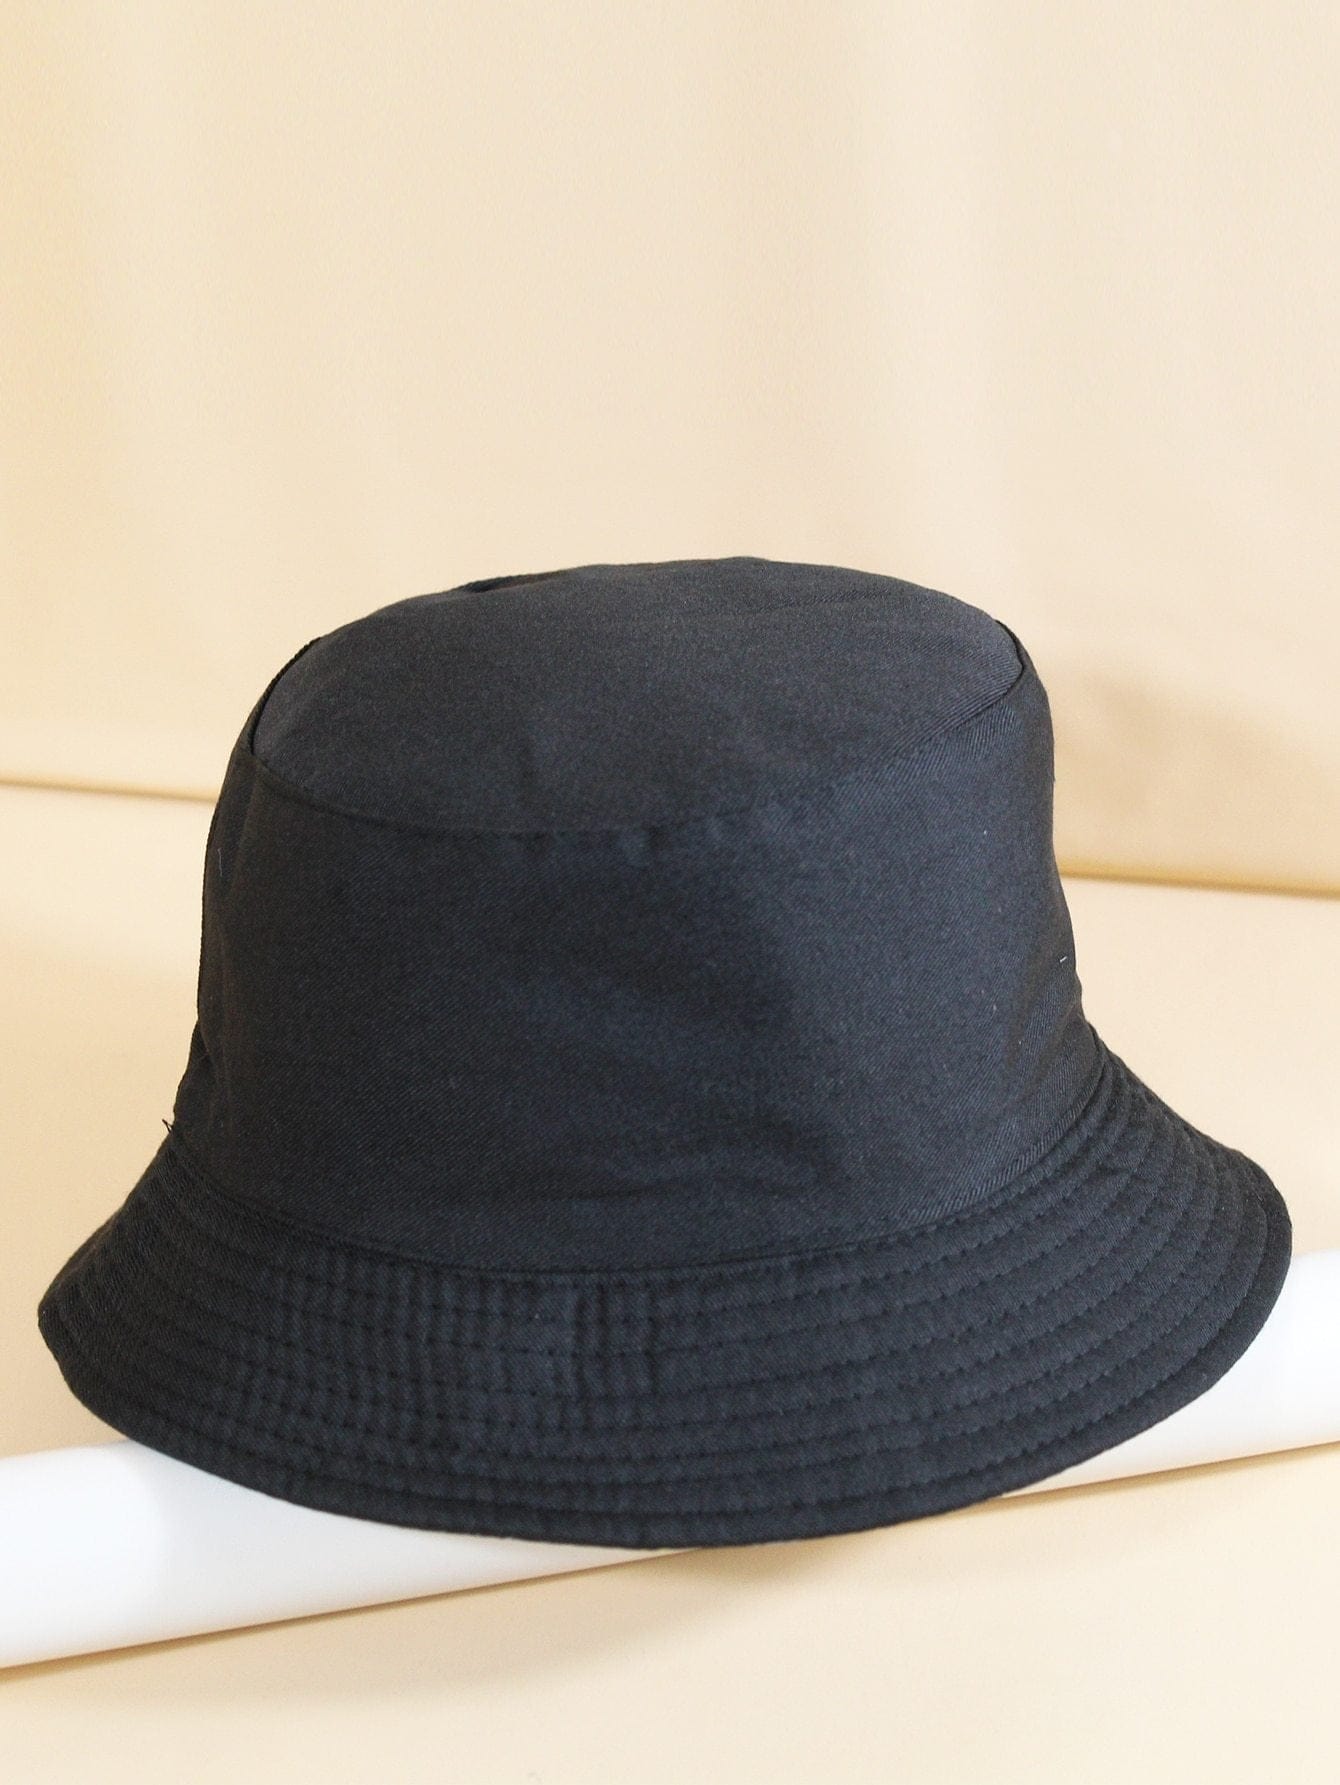 Ink Dot Pattern Reversible Bucket Hat for Women BUC210302178BLA Black